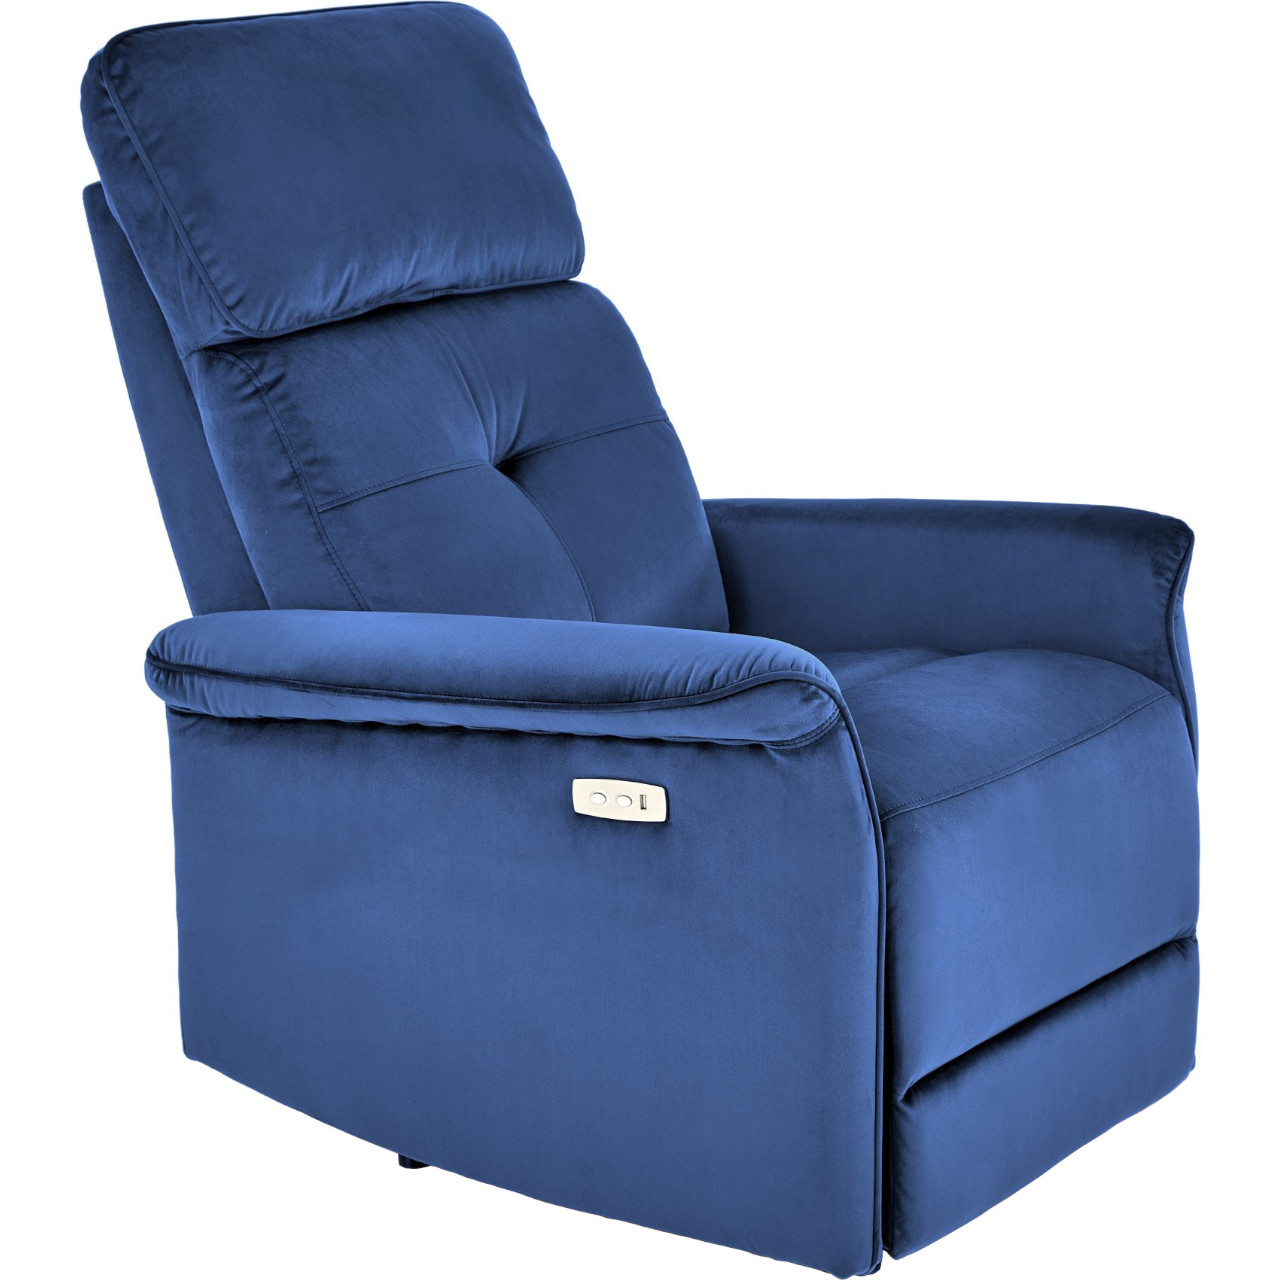 Recliner armchair SAFIR navy blue